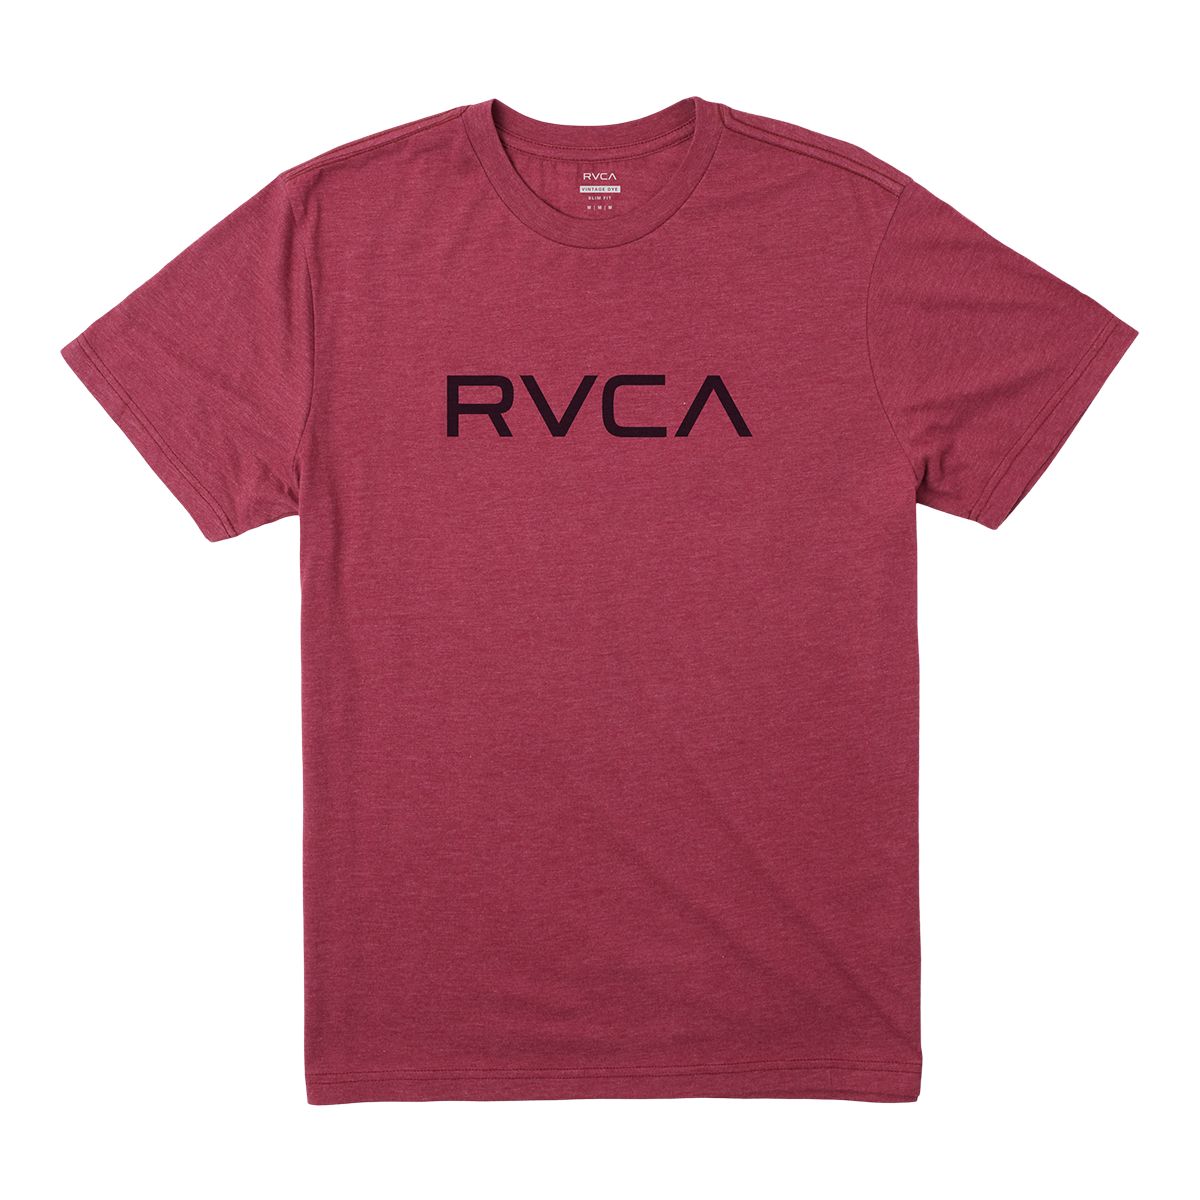 Image of Rvca Men's Big Rvca T Shirt